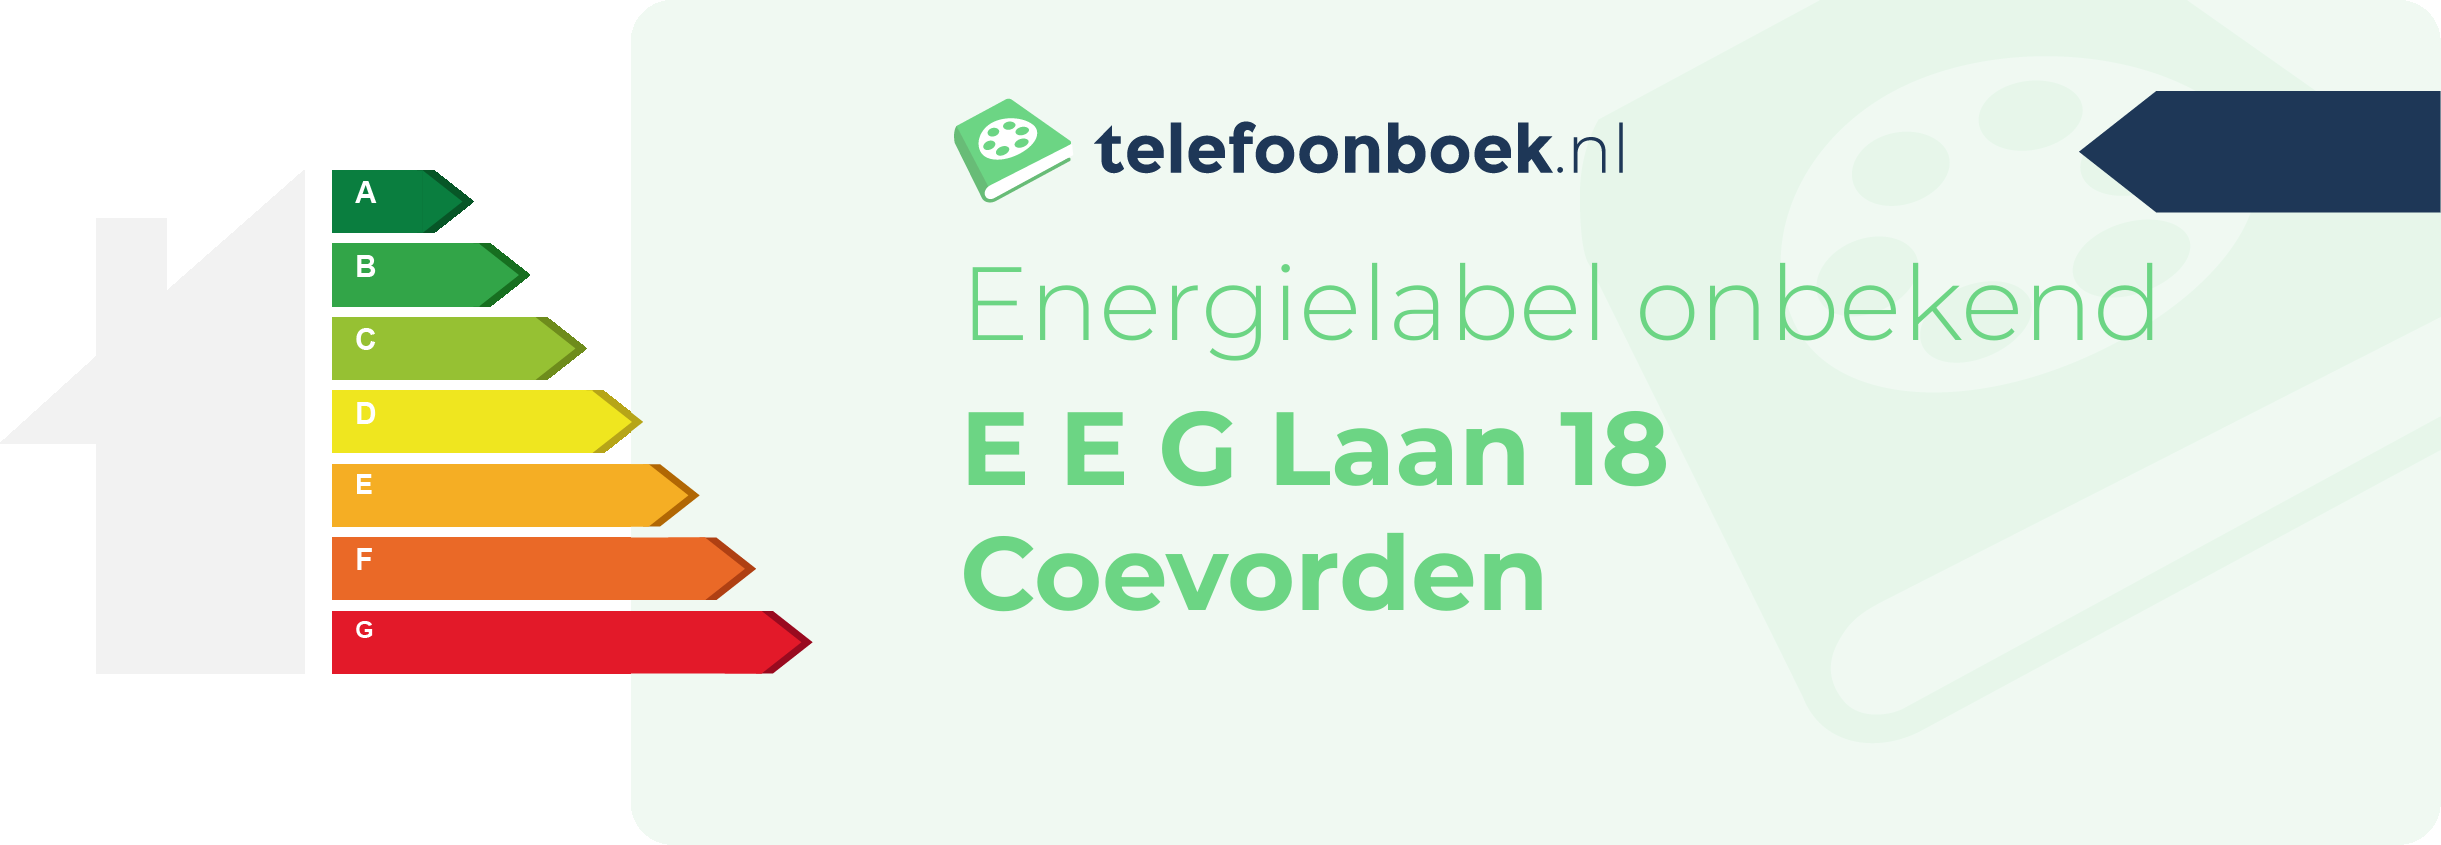 Energielabel E E G Laan 18 Coevorden